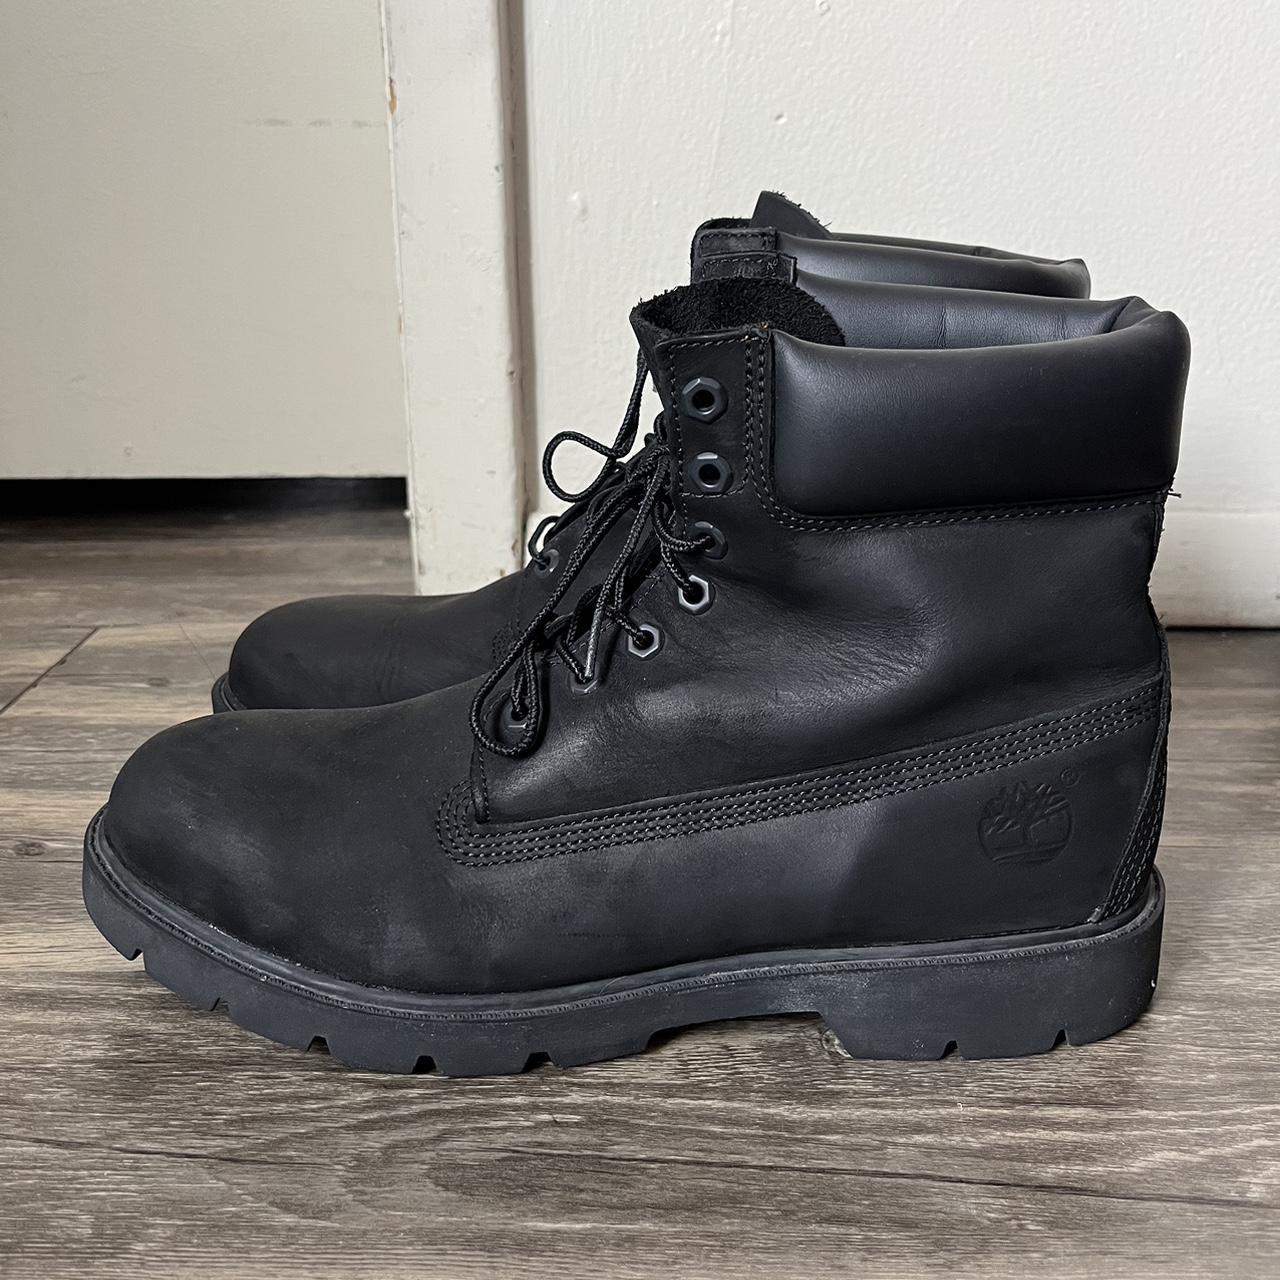 Black Timberland Boots - STEALLL - Men’s size 11.5 -... - Depop